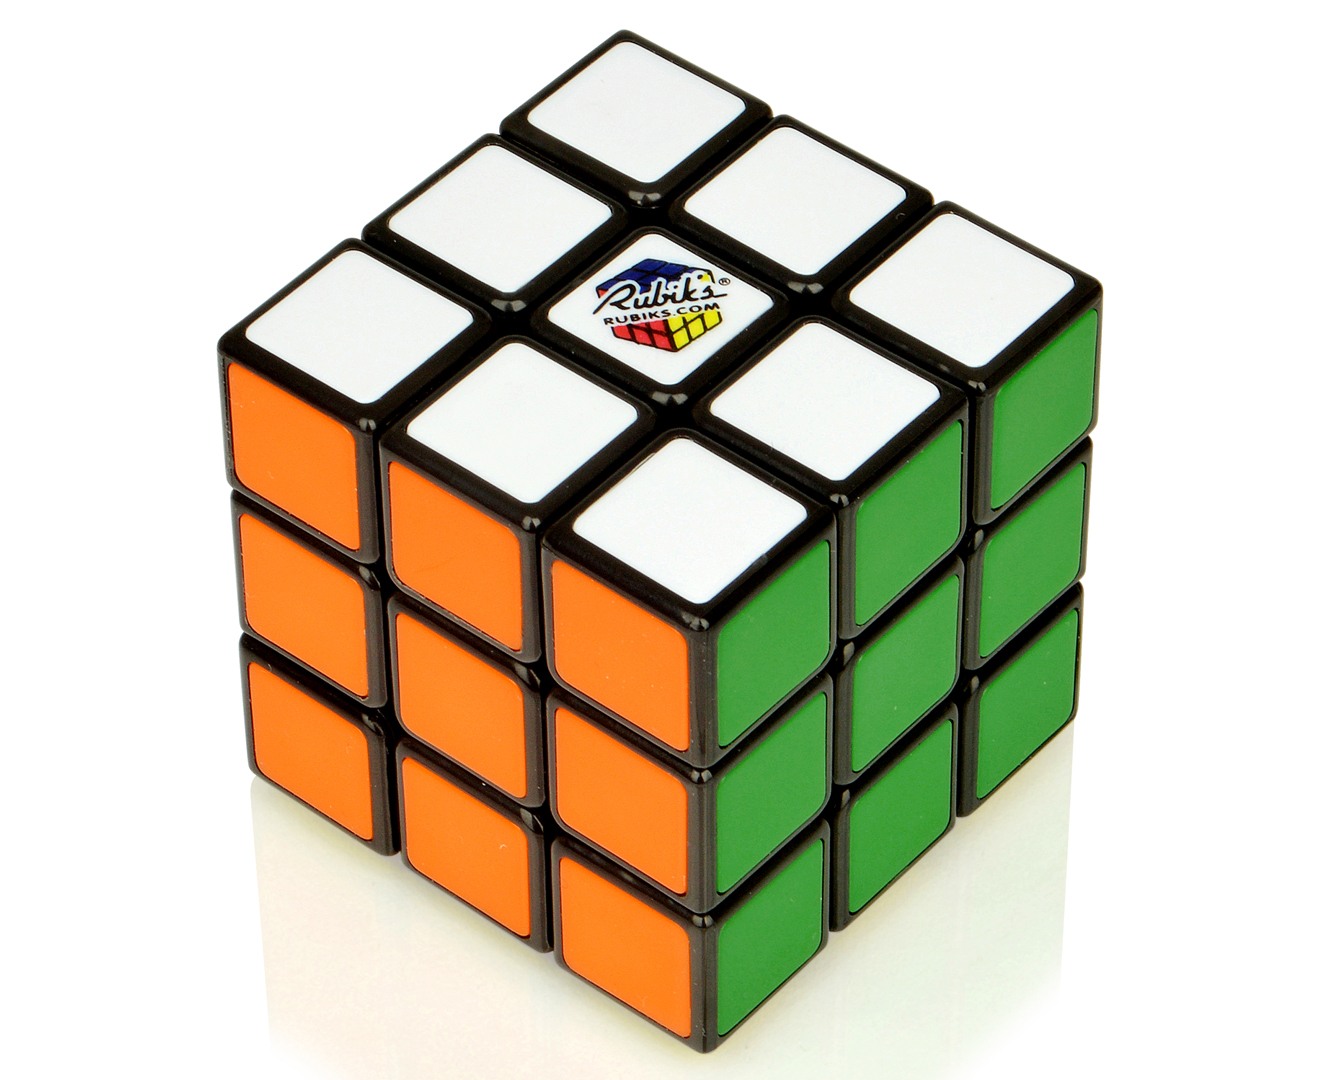 Cube solve. Кубик Рубика Рубикс. Кубик-Рубика 3х3 стандарт. 3x3 Cube. Кубик рубик 3x3 1974.